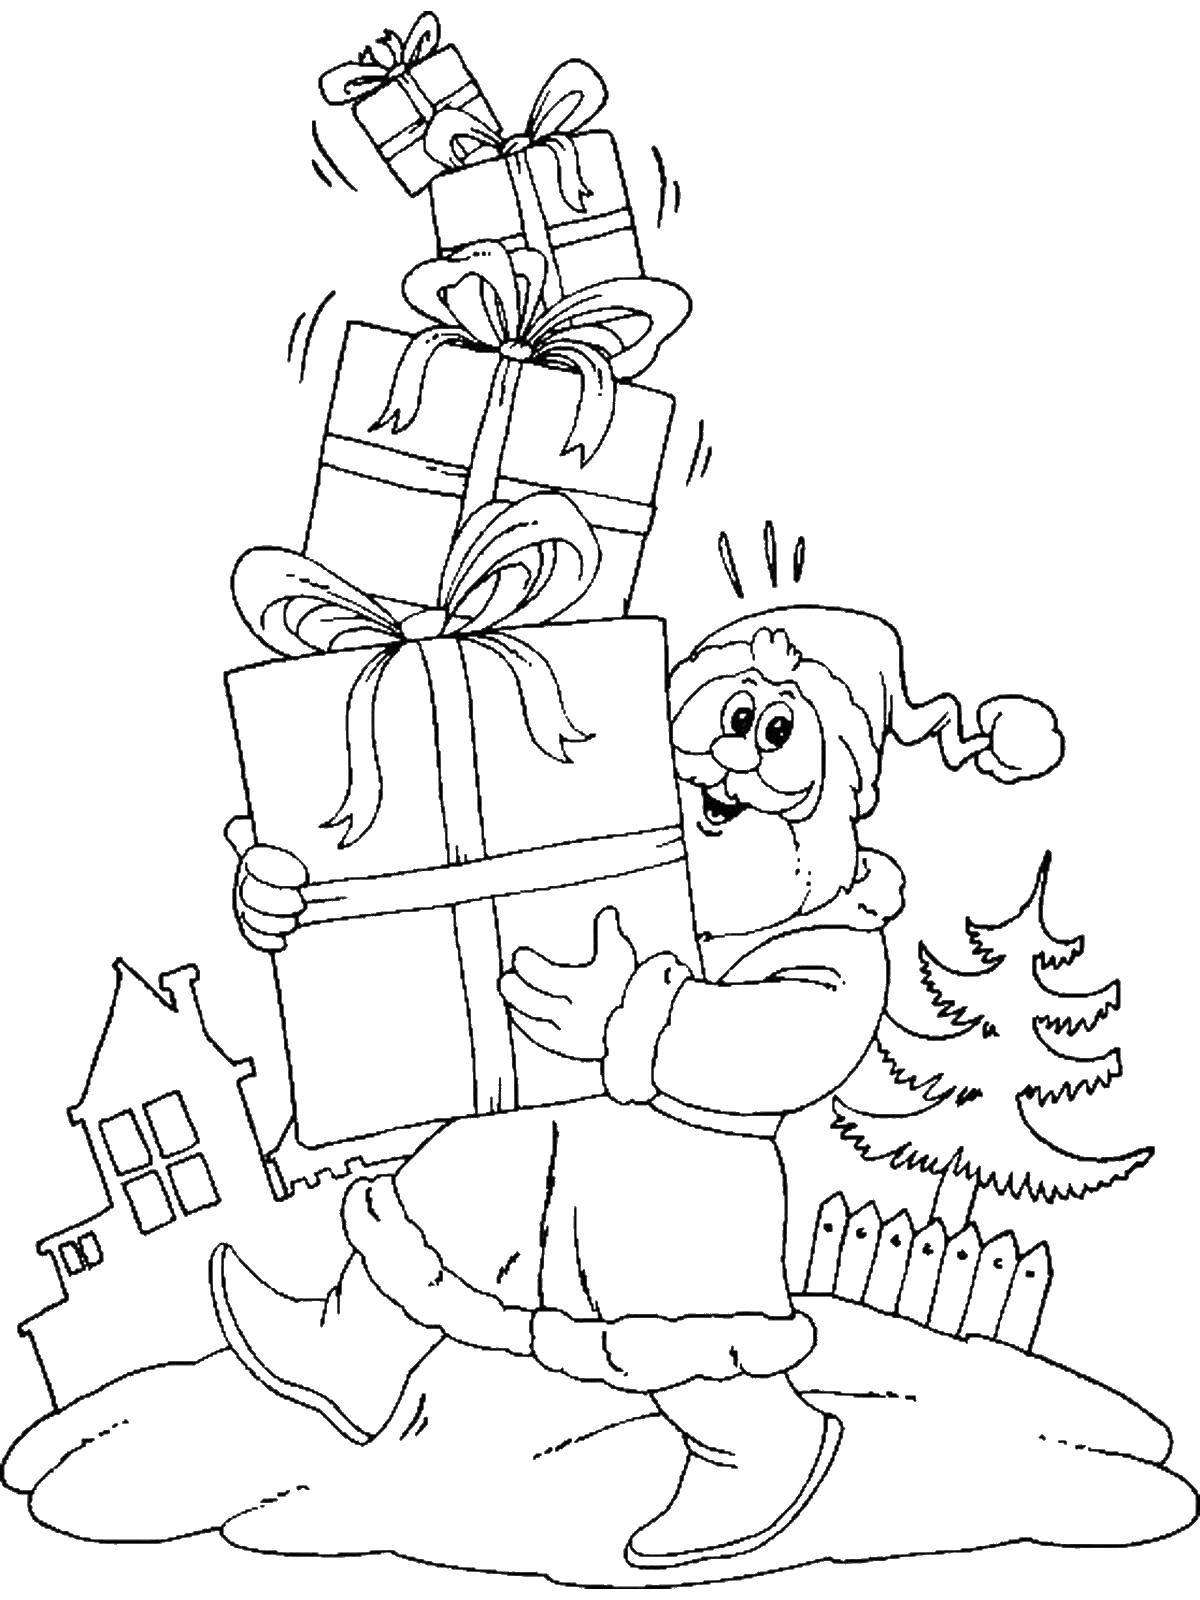 Название: Раскраска Санта клаус с подарками. Категория: Раскраски для малышей. Теги: коробки, санта клаус.